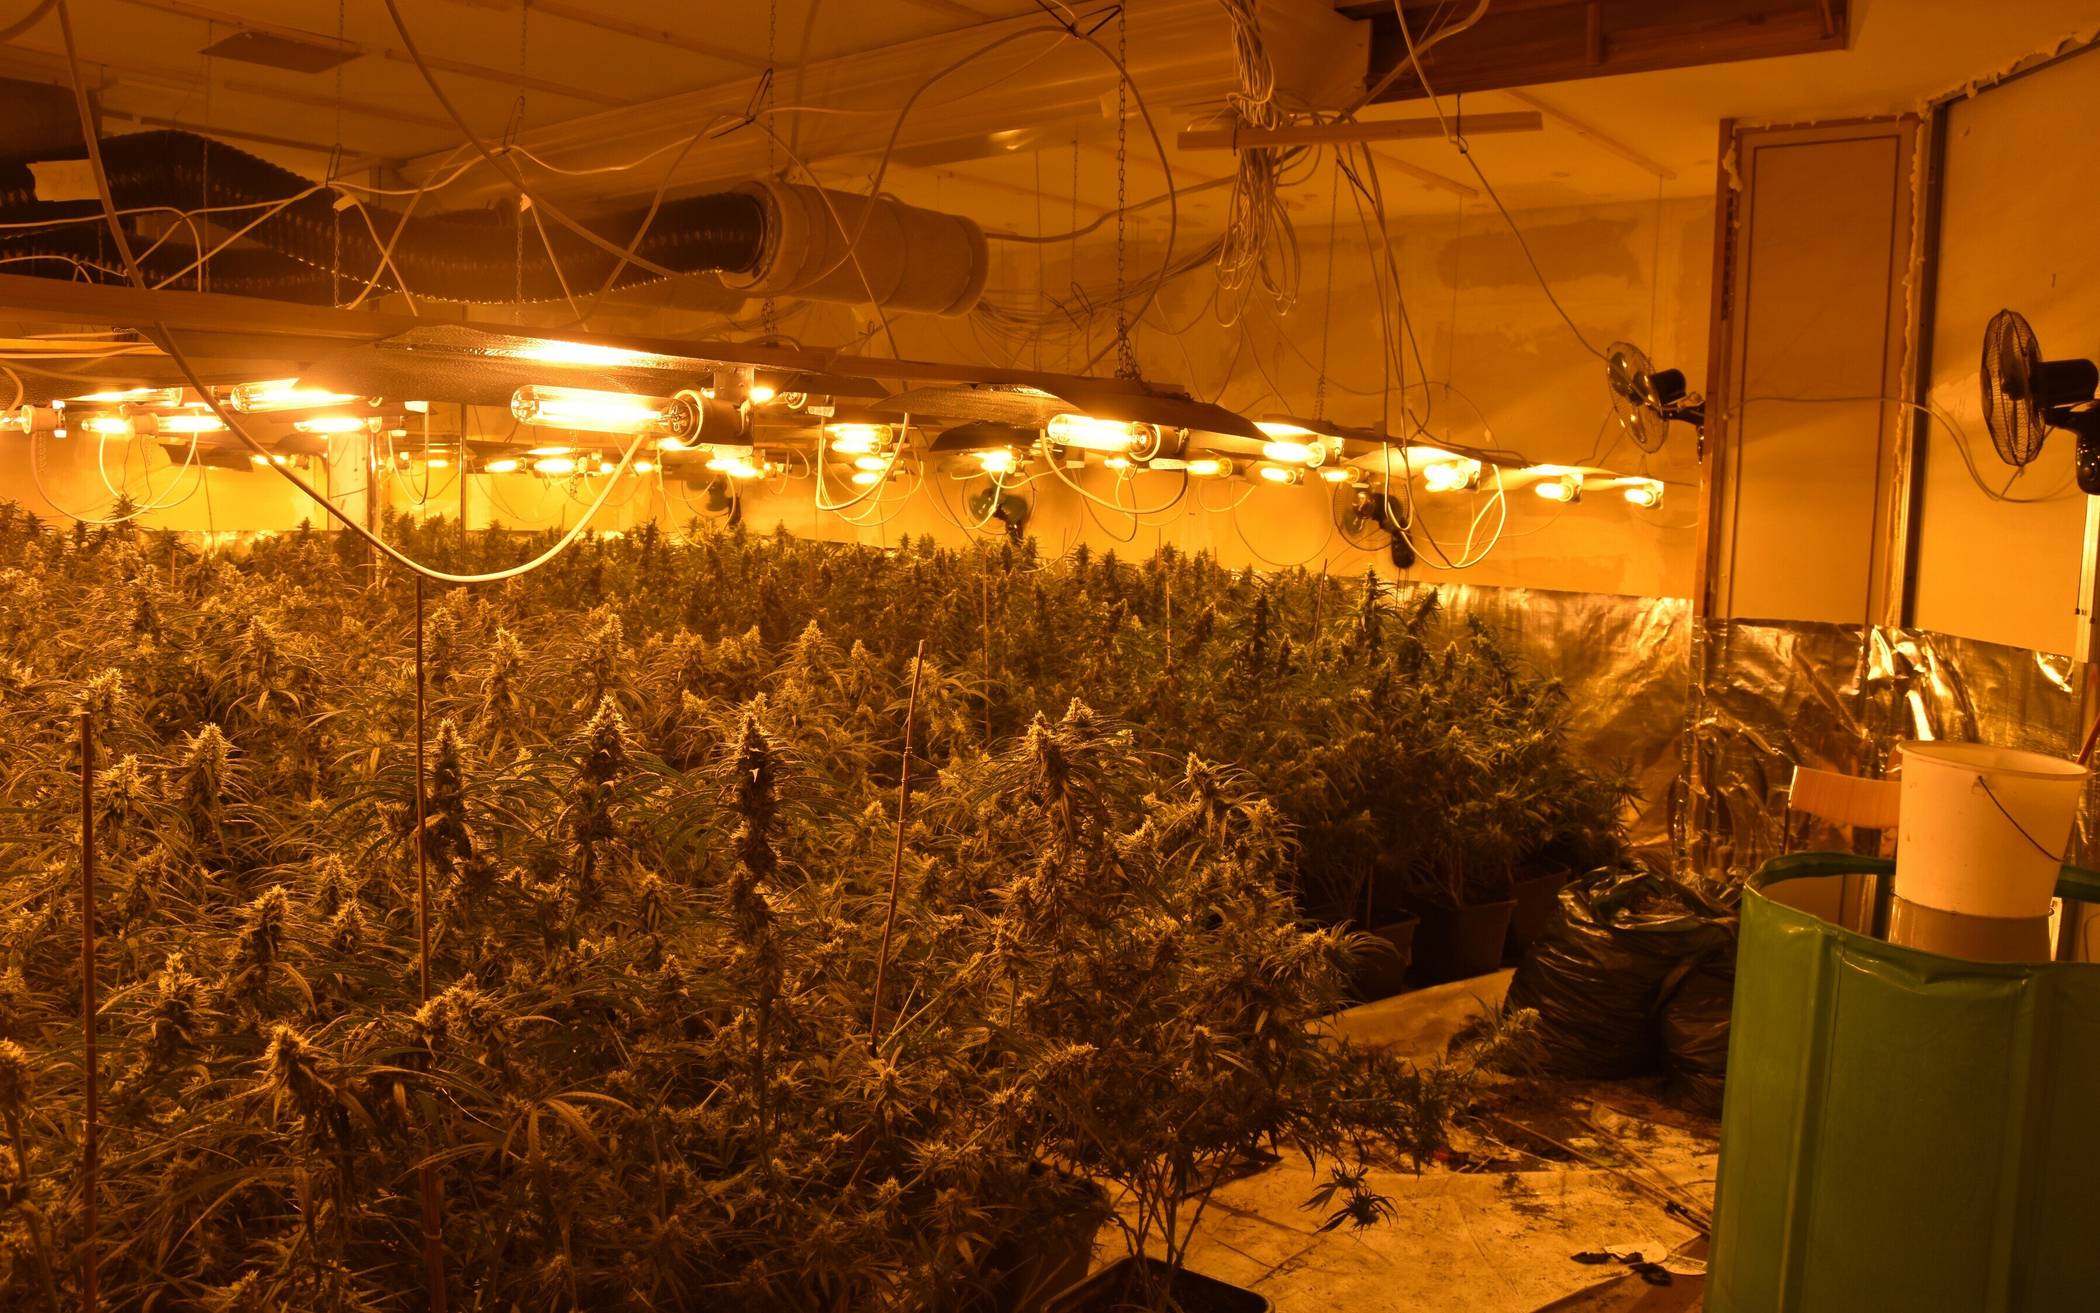 Größere Cannabis-Plantage aufgeflogen